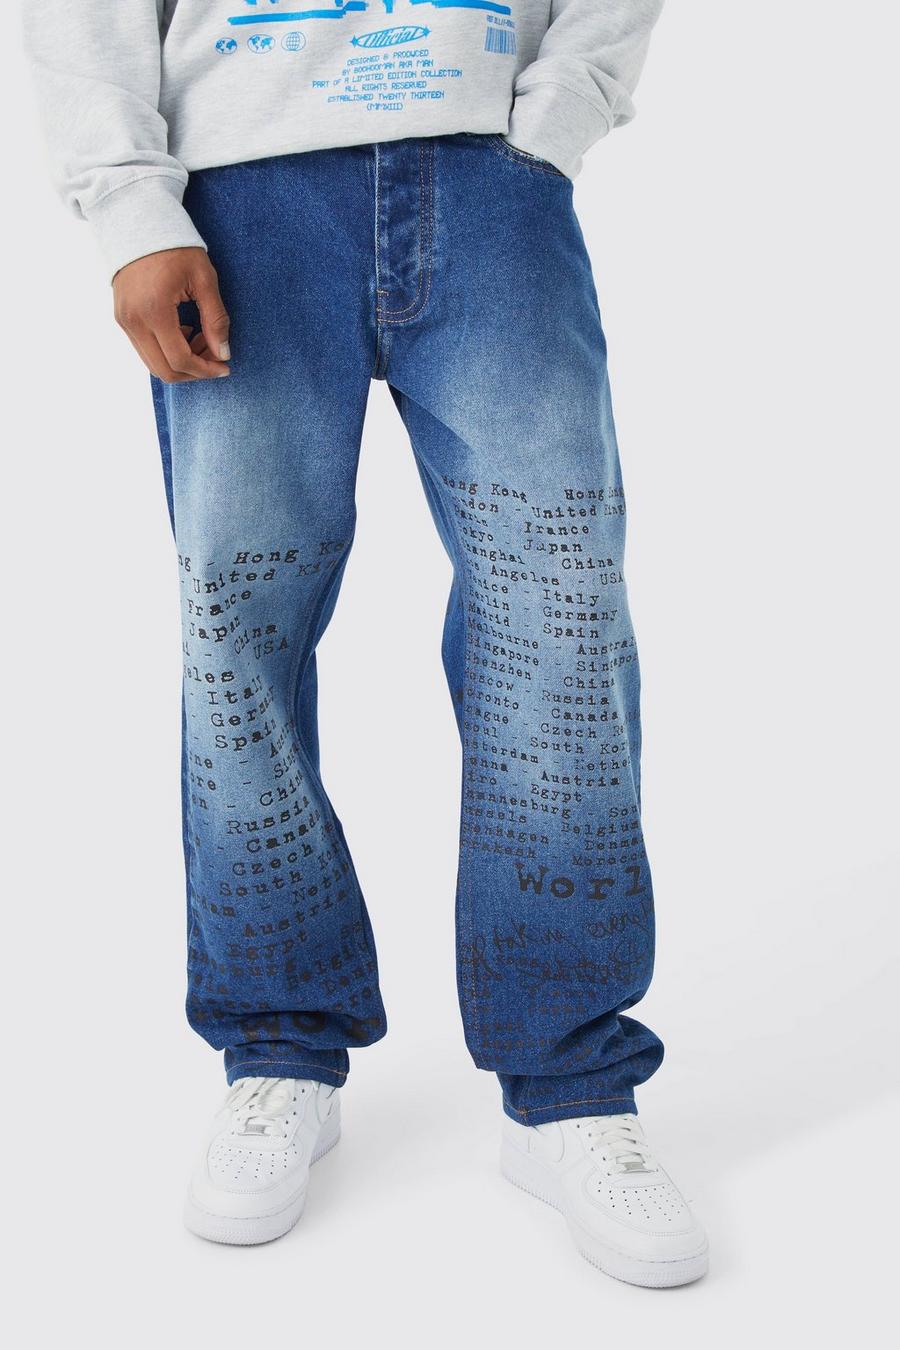 Jeans rilassati in denim rigido con stampa al laser di testo all over, Mid blue